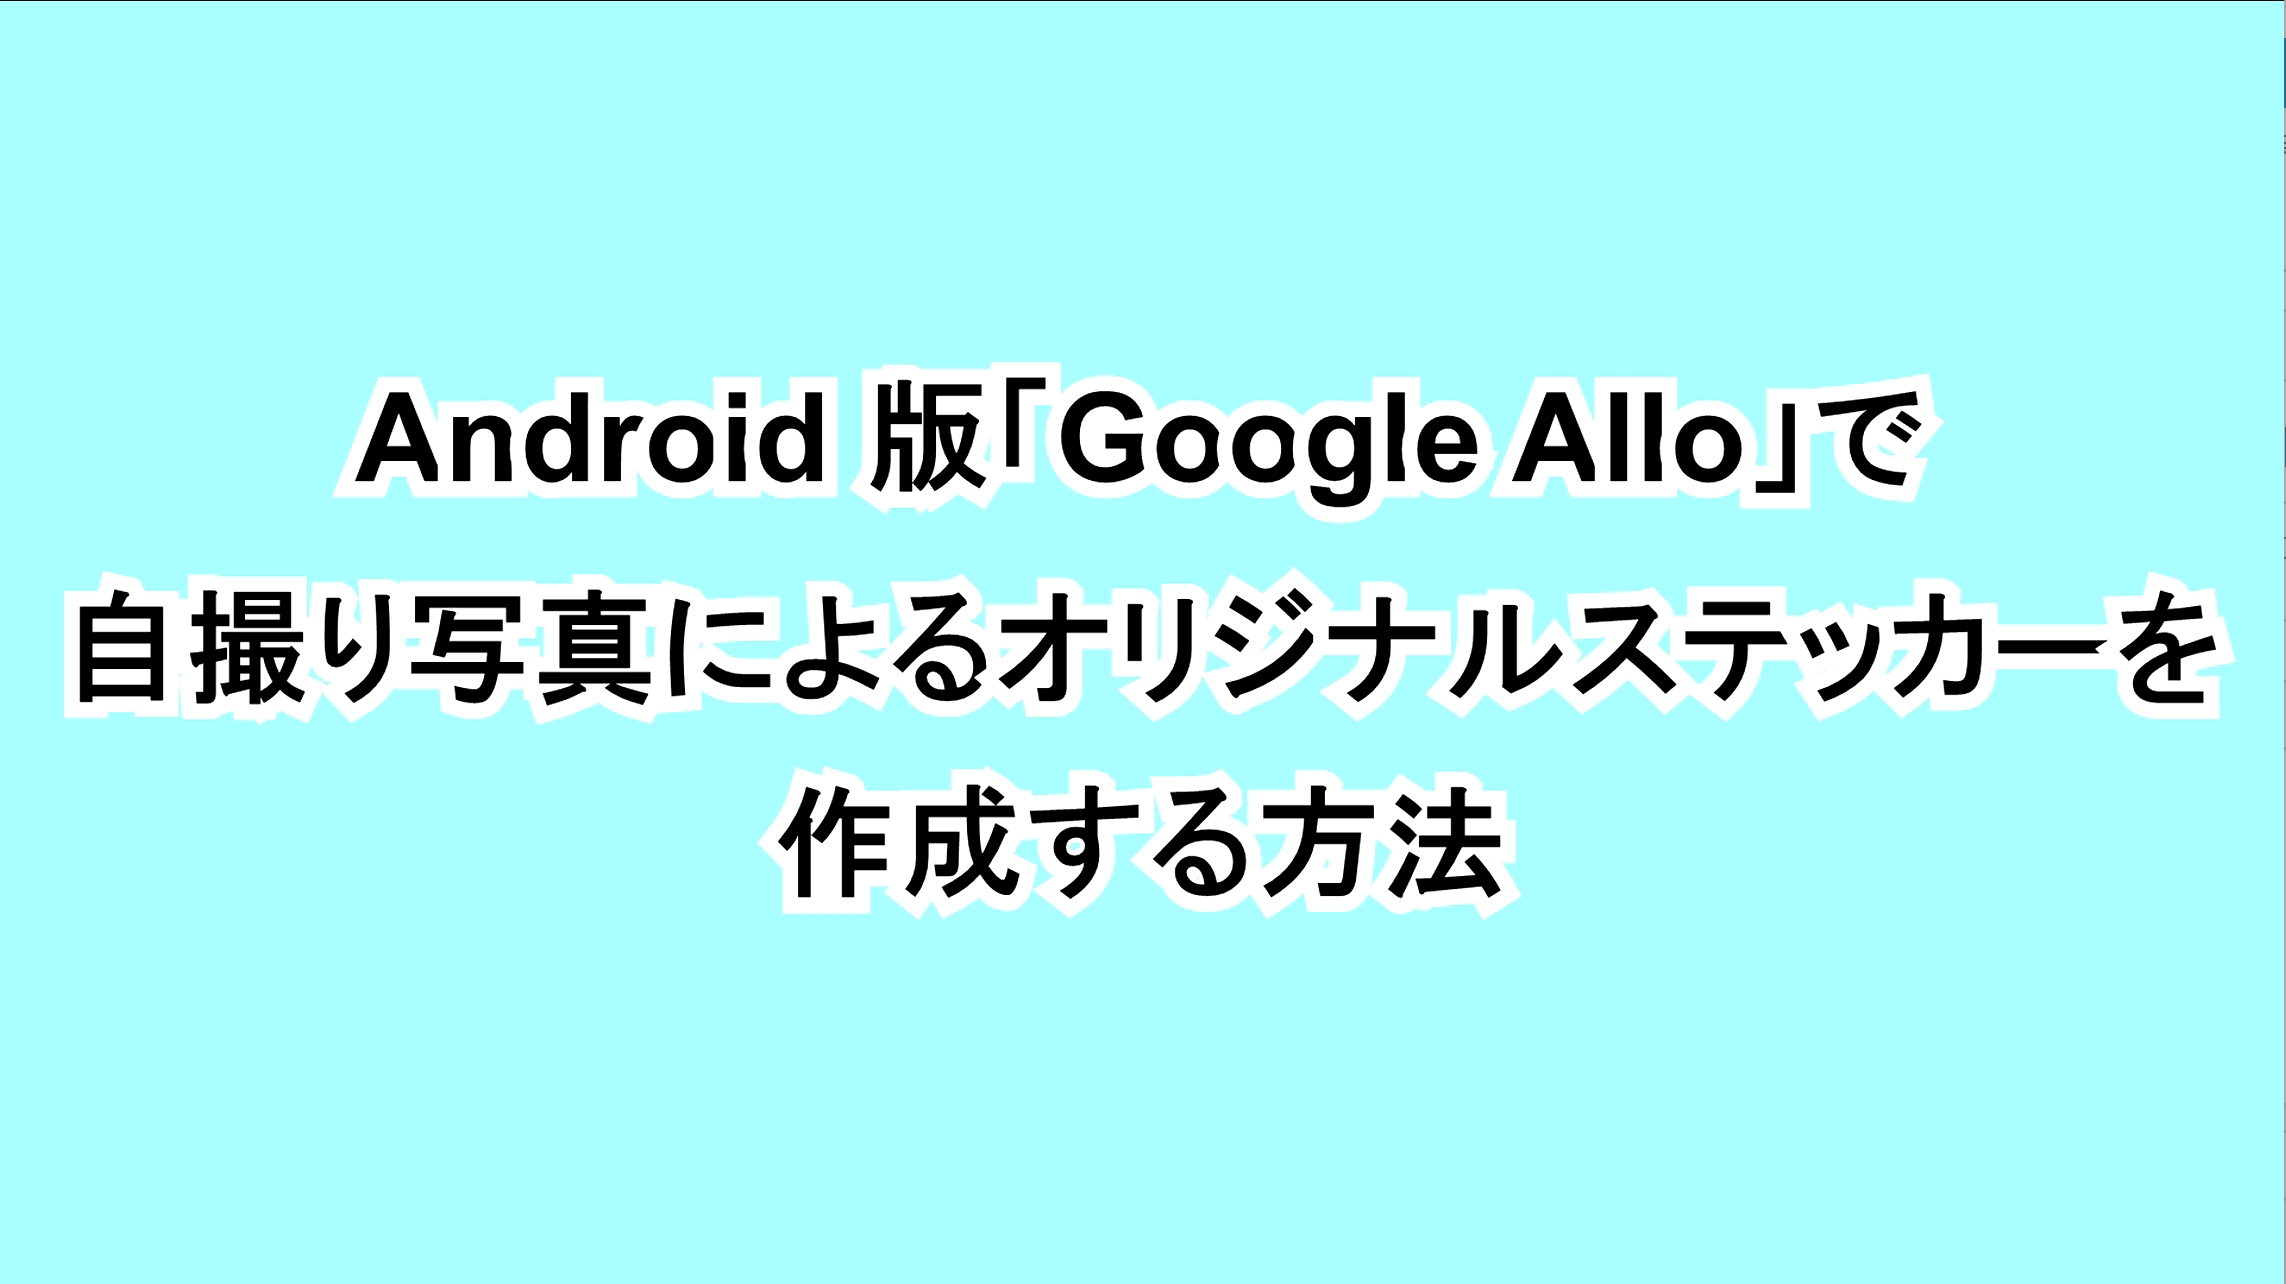 Android版「Google Allo」で自撮り写真によるオリジナルステッカーを作成する方法